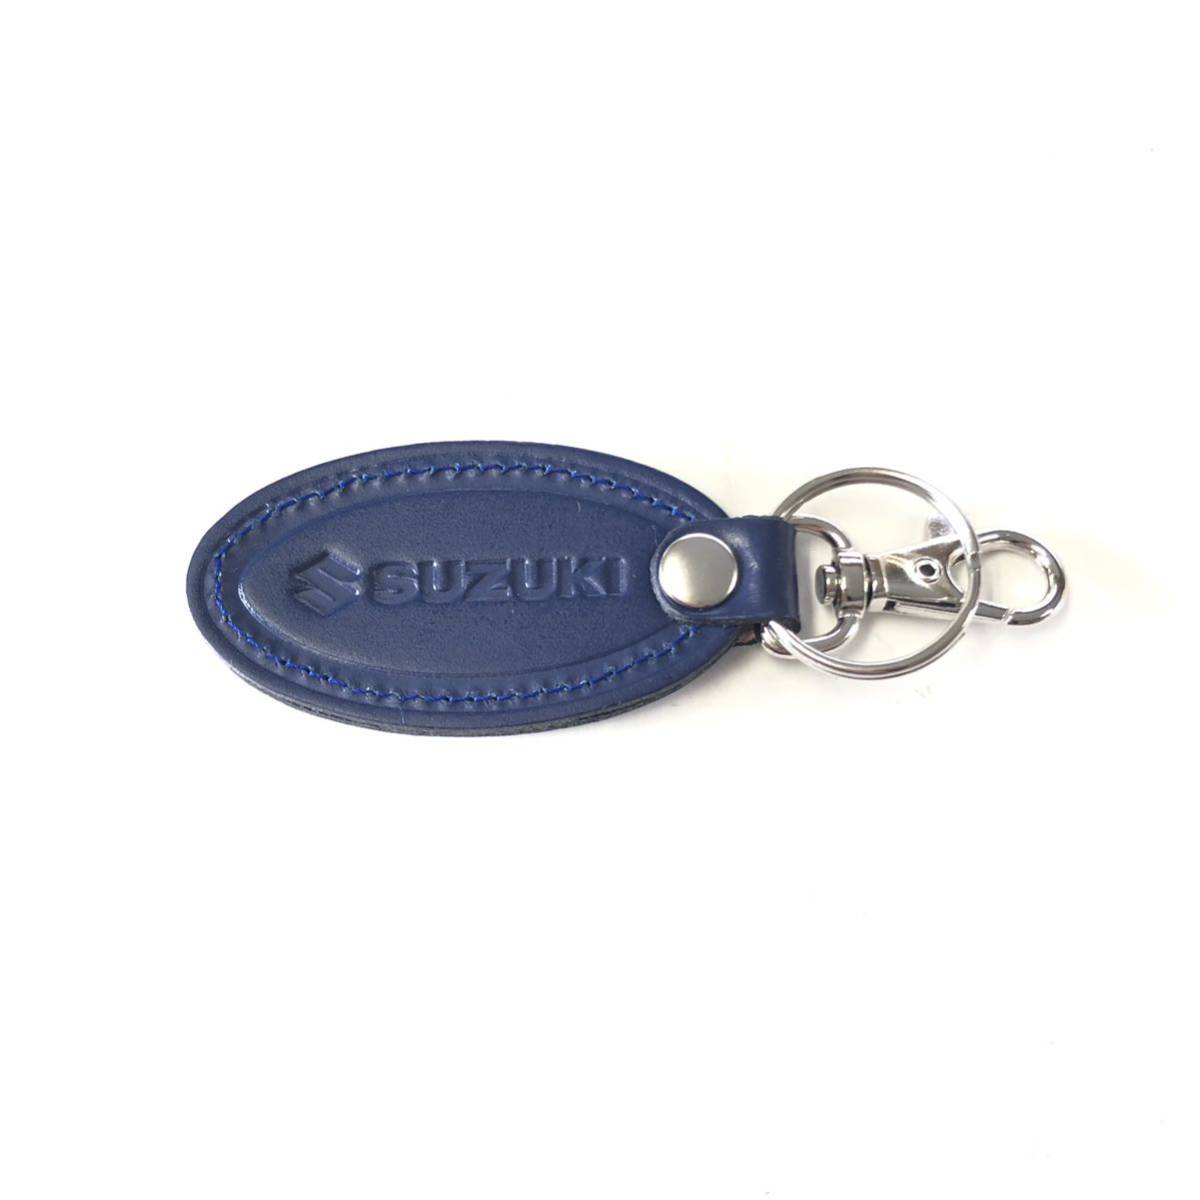  Suzuki key holder type pushed . blue 